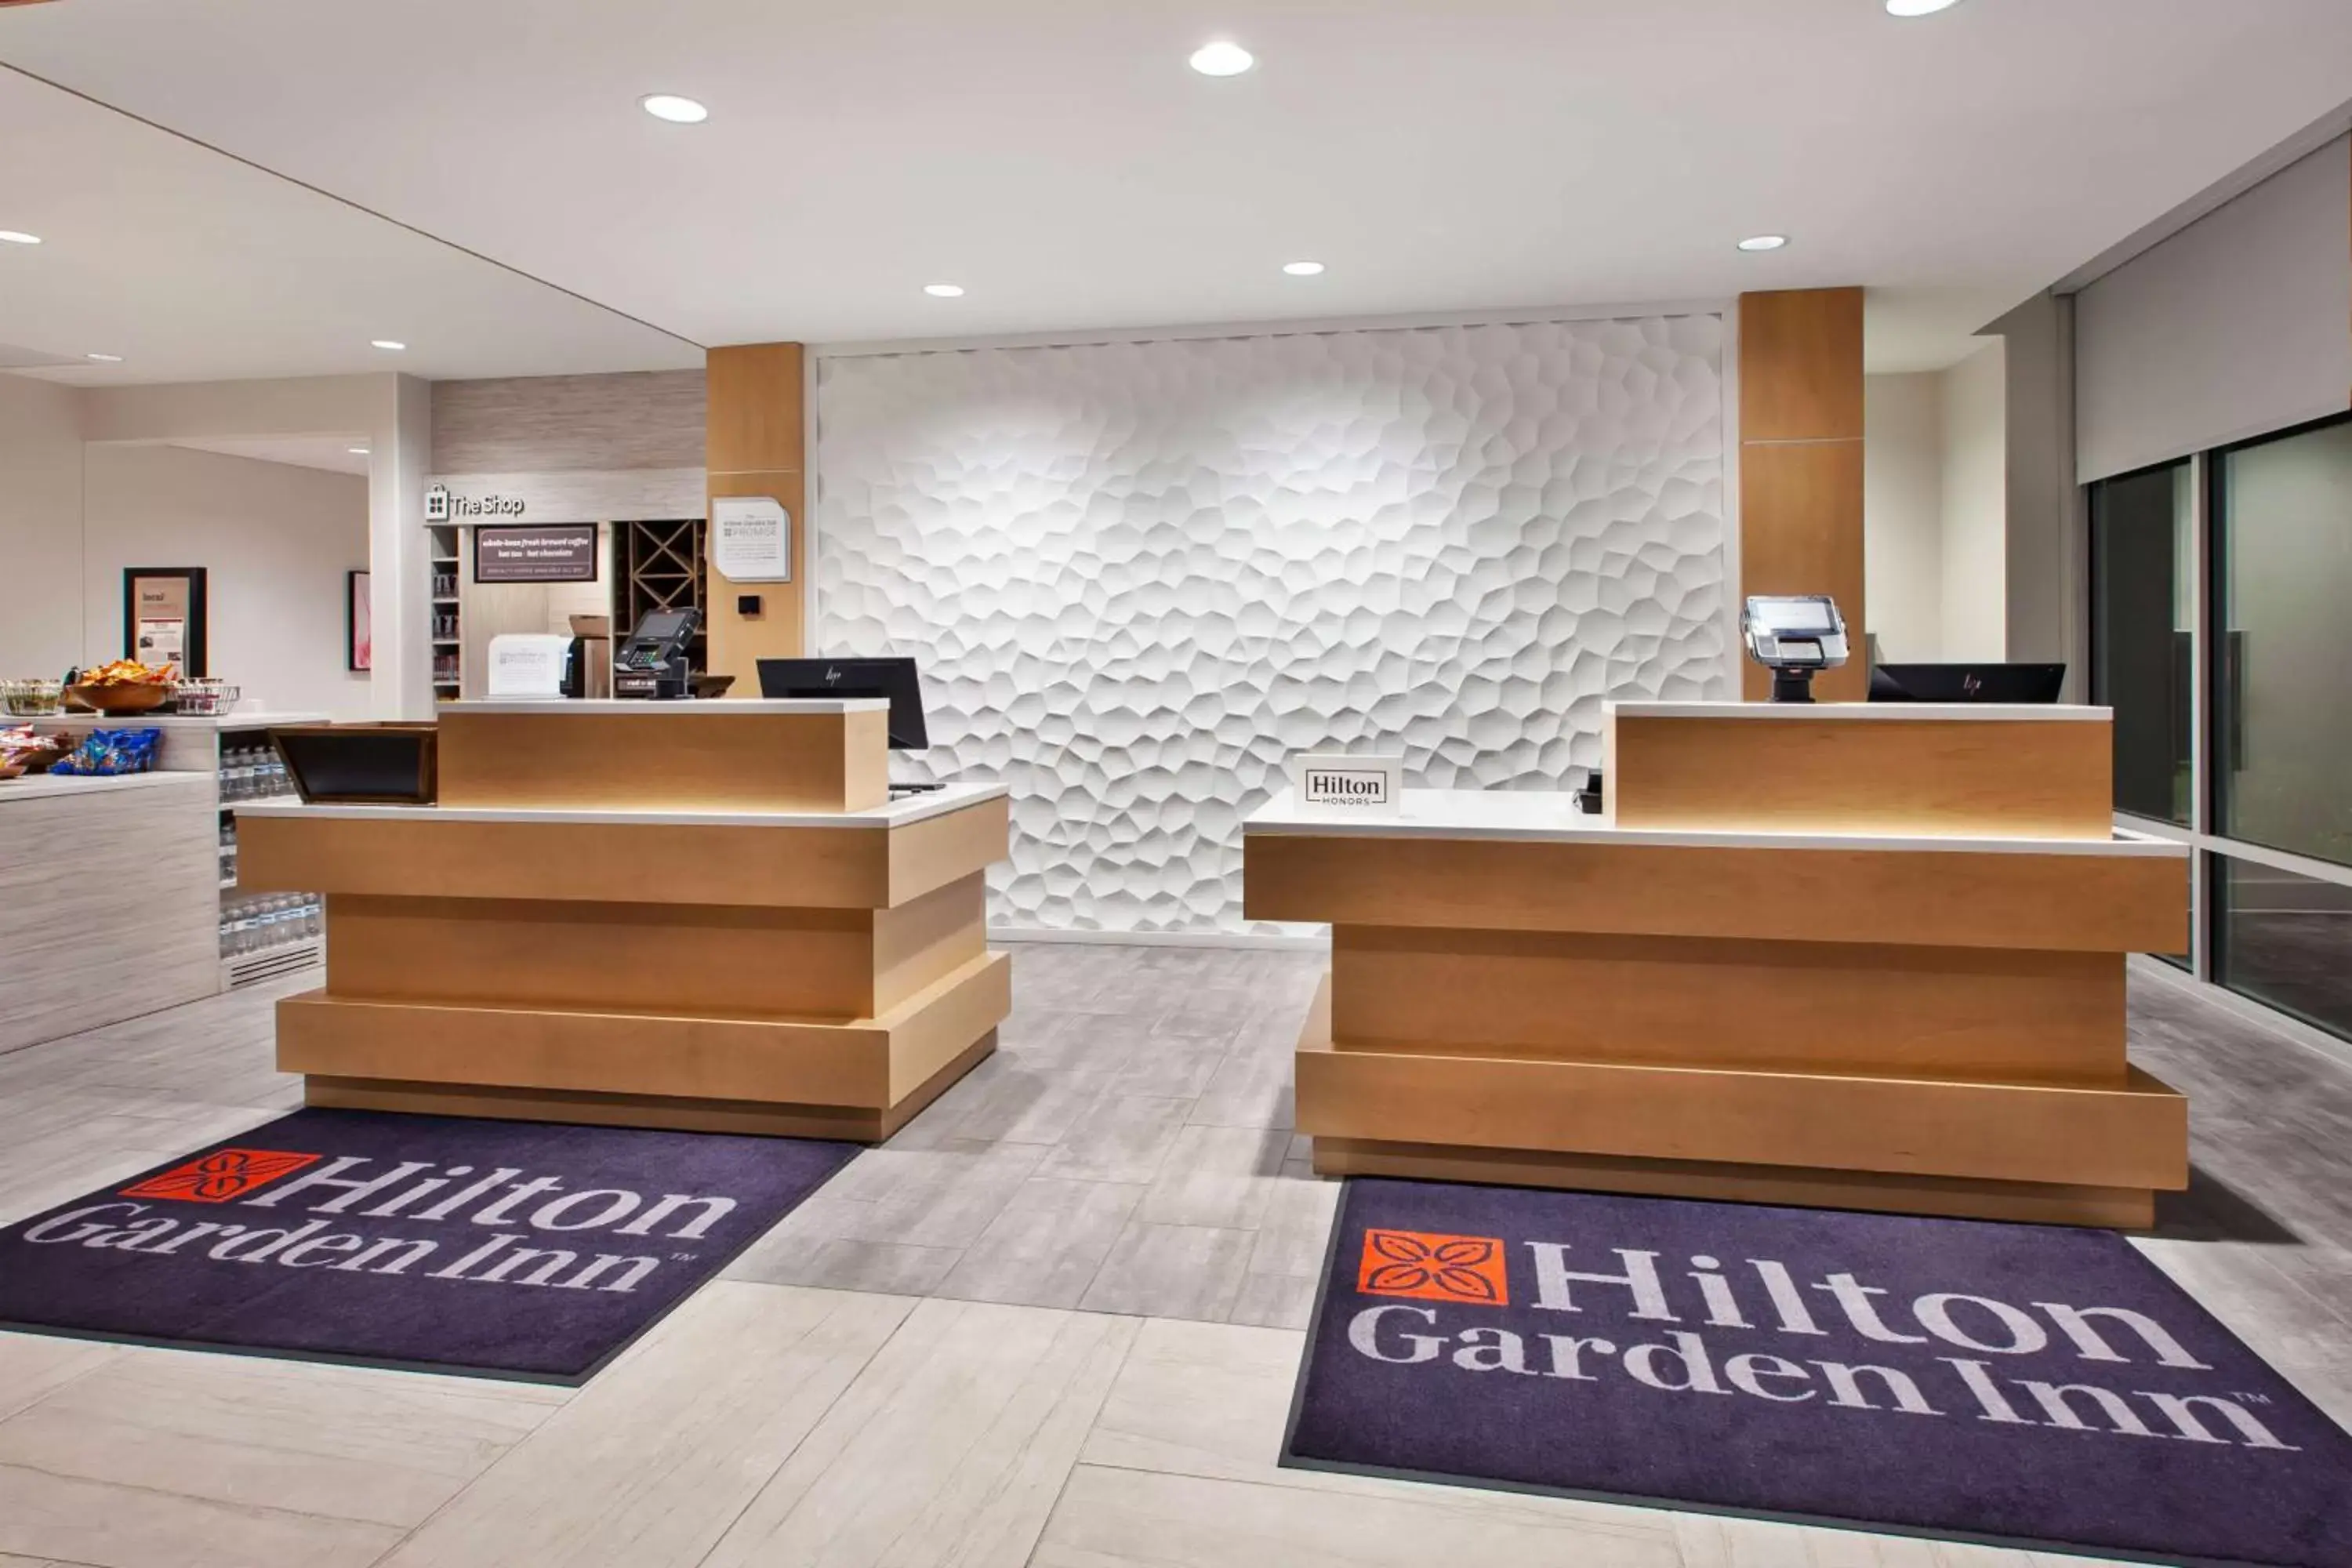 Lobby or reception, Lobby/Reception in Hilton Garden Inn Columbus Easton, Oh